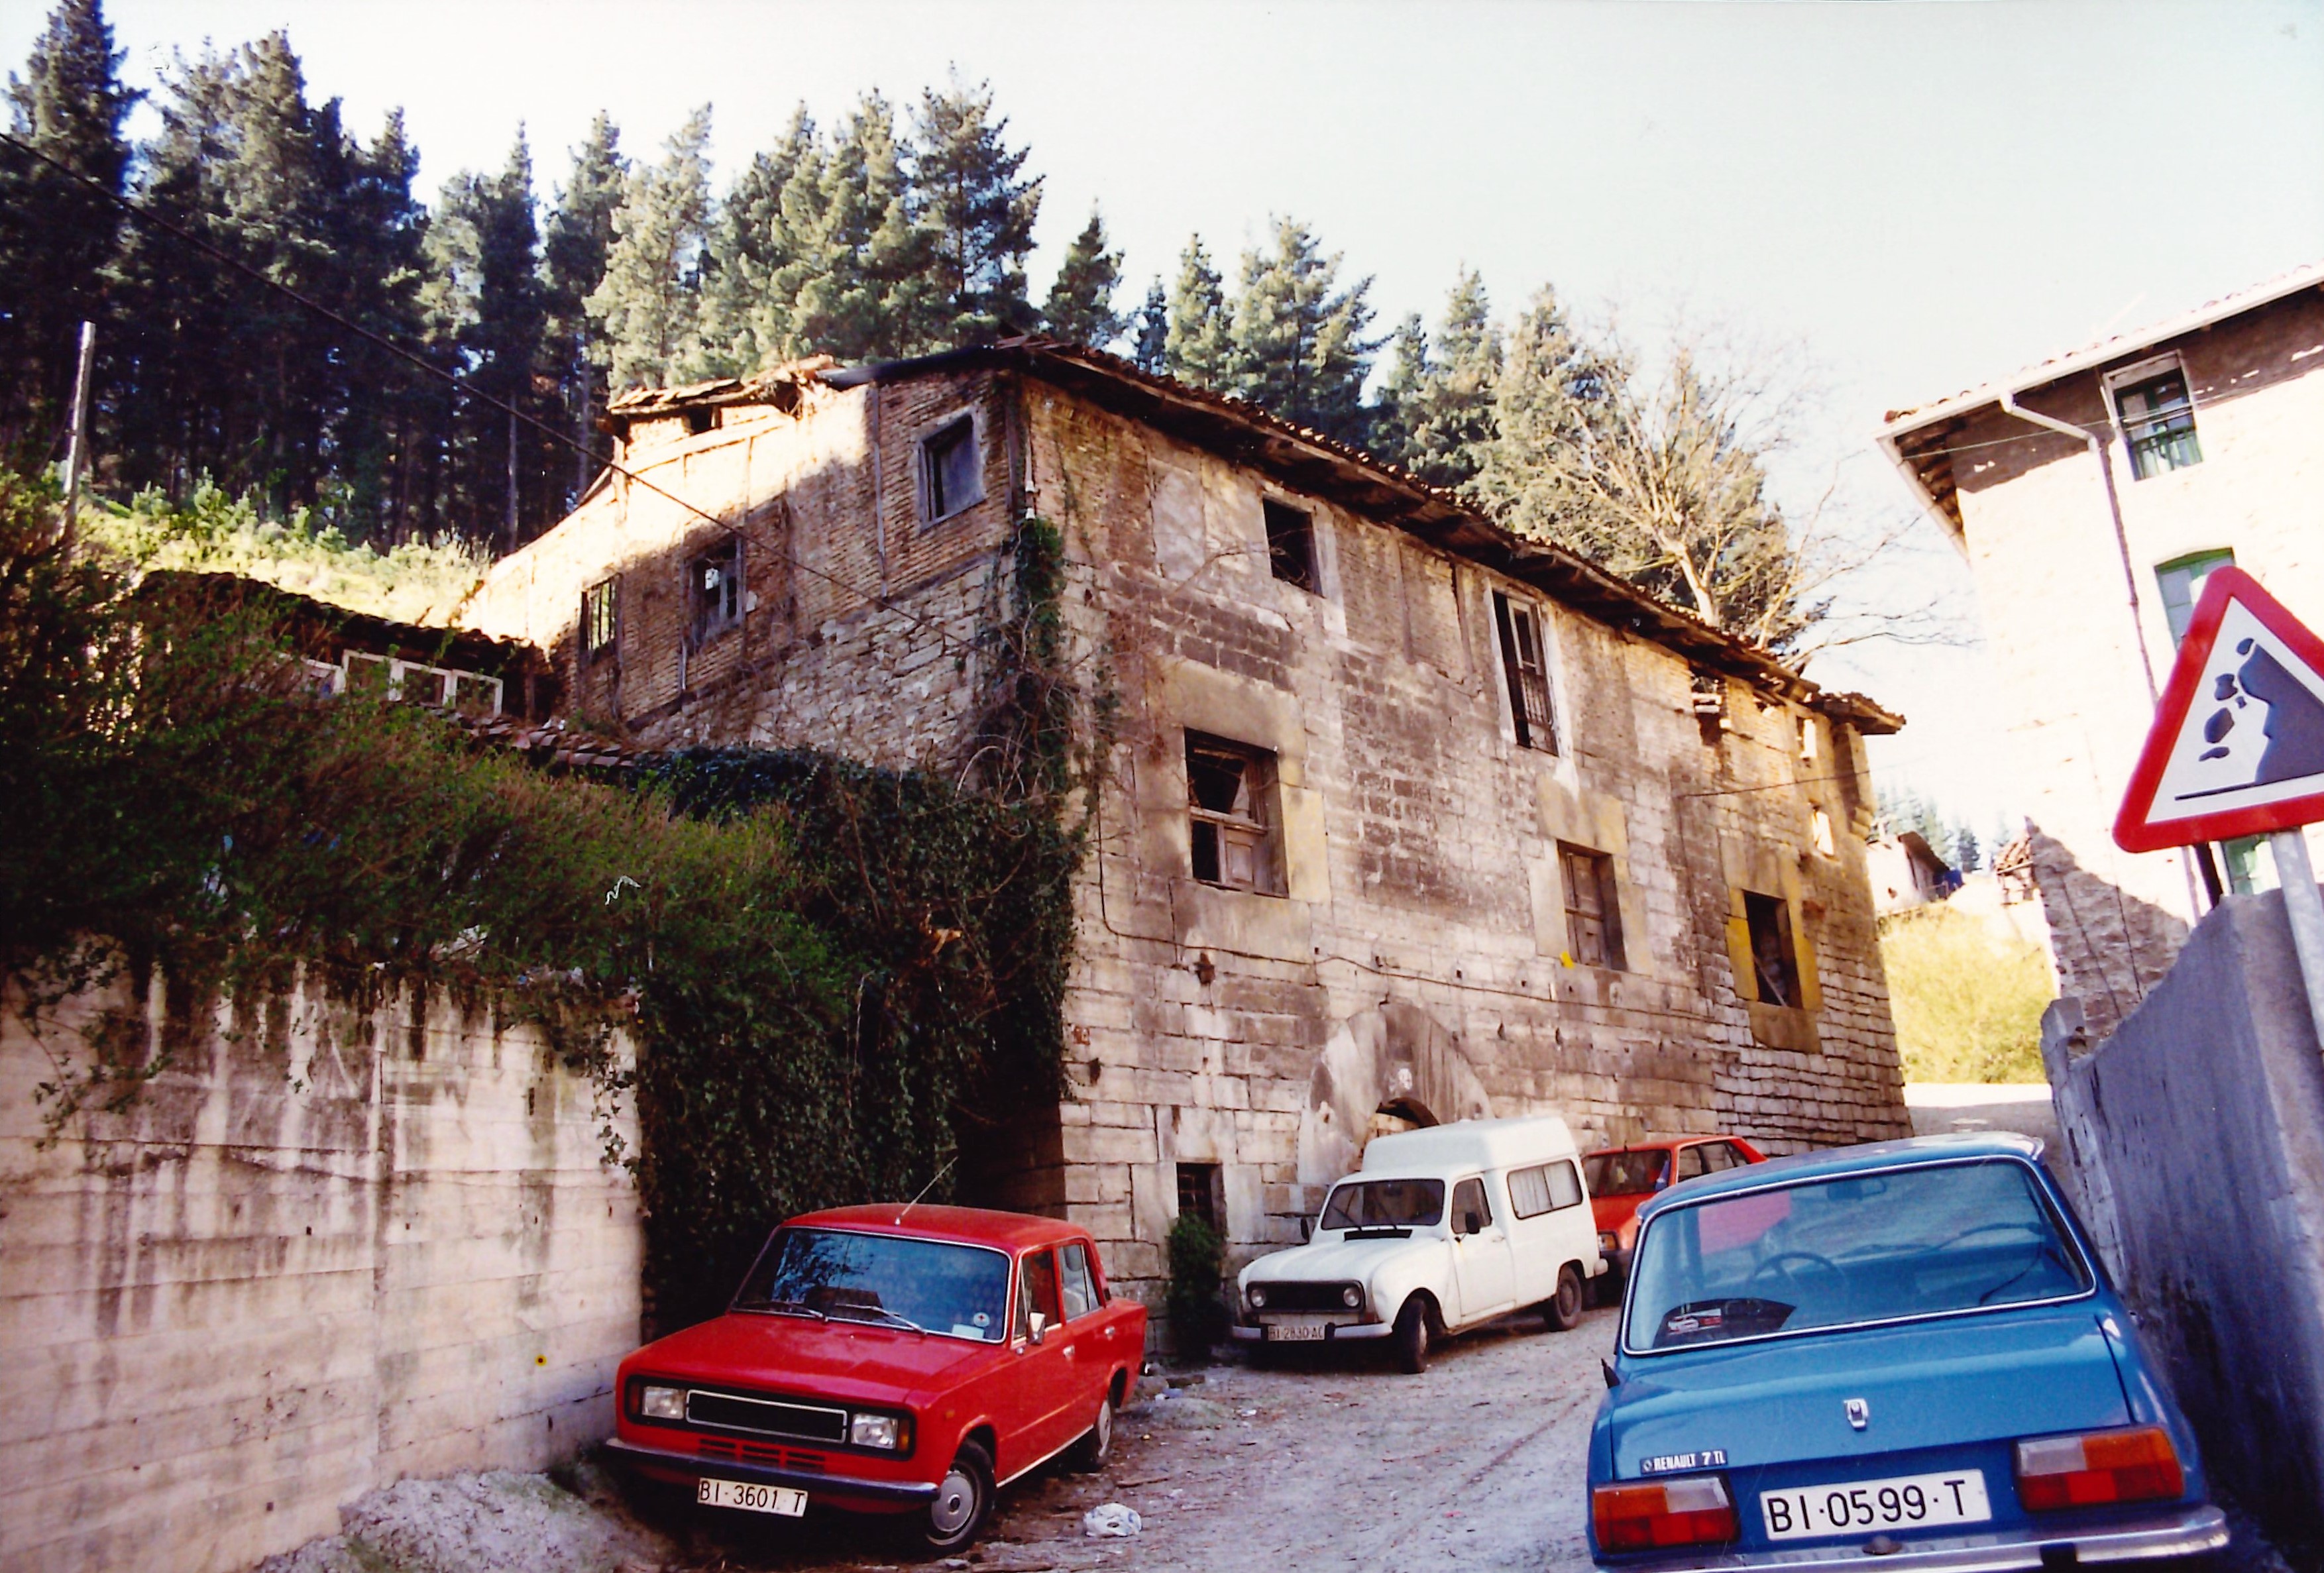 Torreta fachada lateral izquierda (en el barrio Kaltxango). Torretako ezker aldeko fatxada (Kaltxango auzoan).